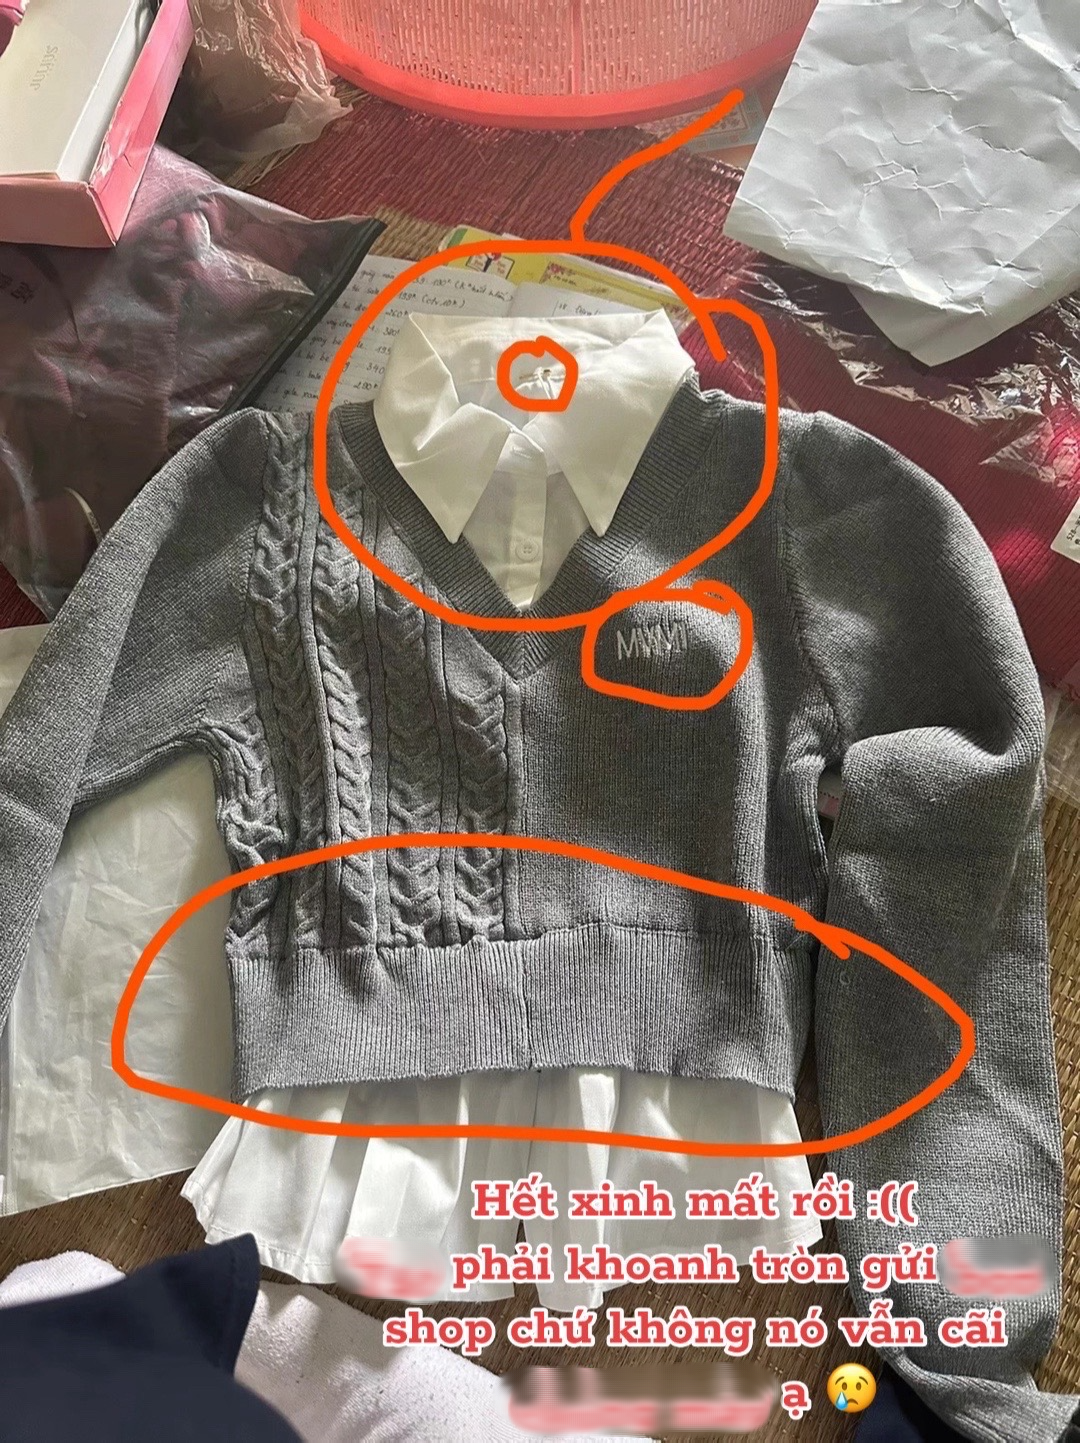 1001 chuyện cười ra nước mắt khi order quần áo trên Taobao: Hàng về tay "không đội trời chung" so với ảnh mẫu- Ảnh 6.